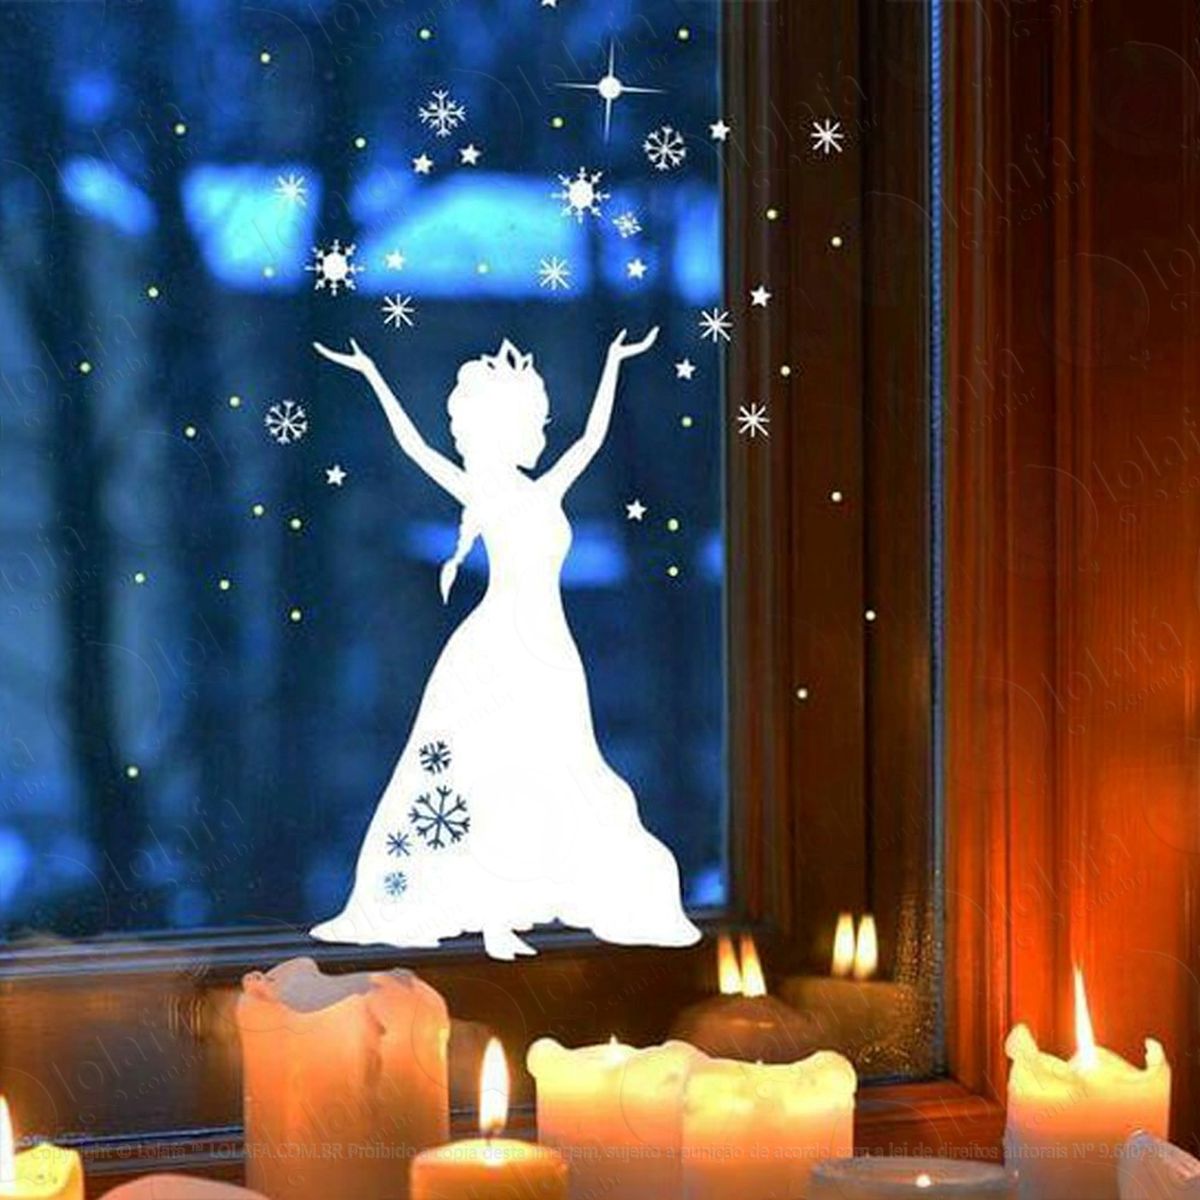 snow princesa adesivo de natal para vitrine, parede, porta de vidro - decoração natalina mod:307